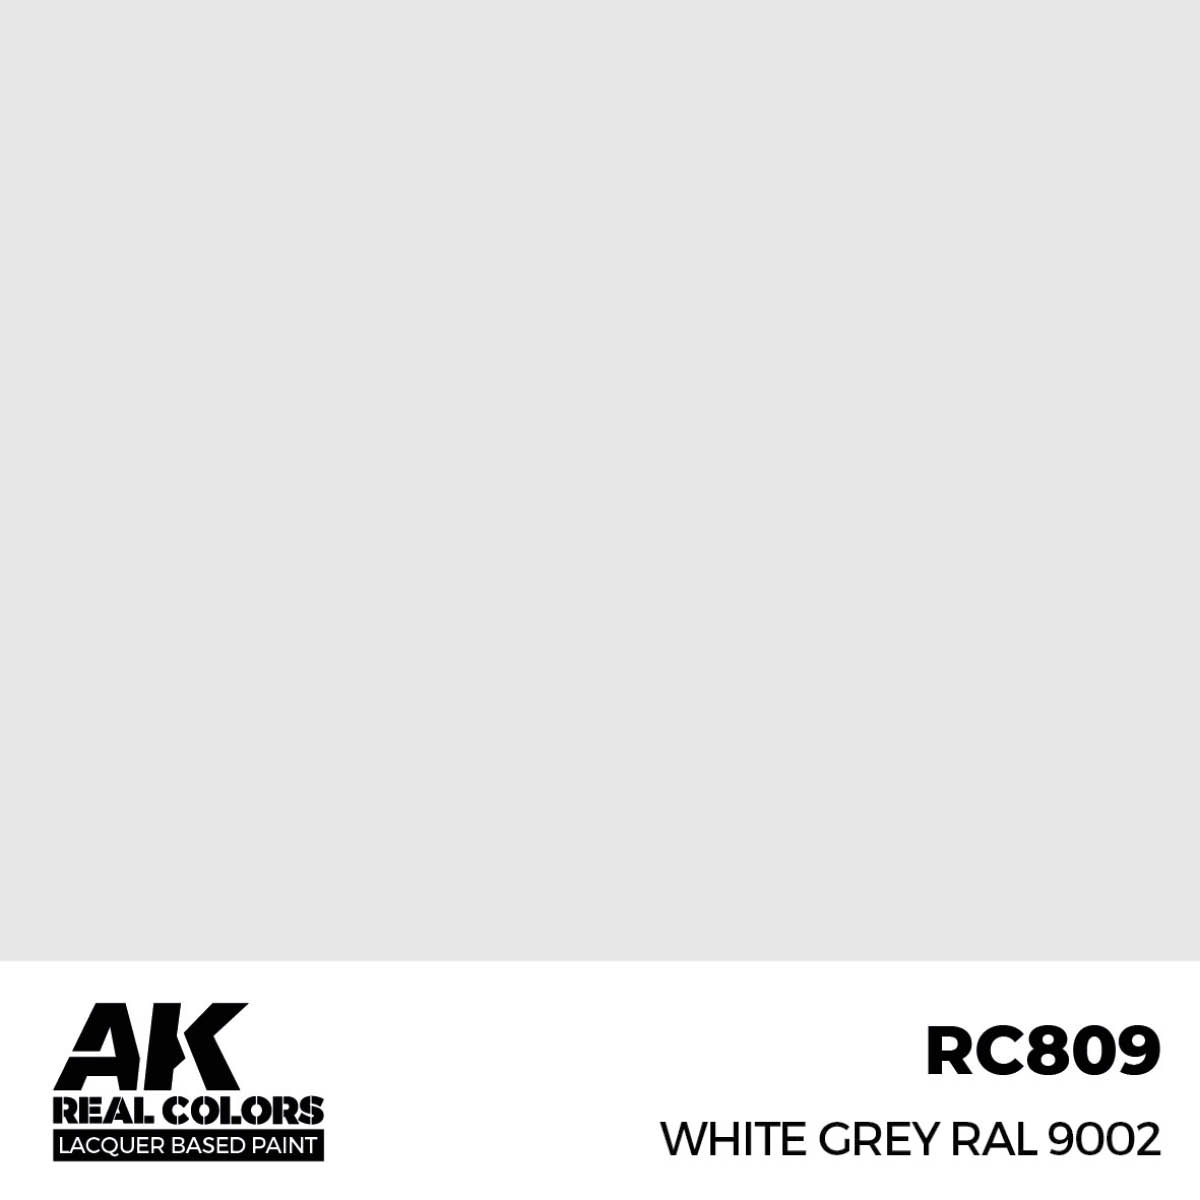 White Grey RAL 9002